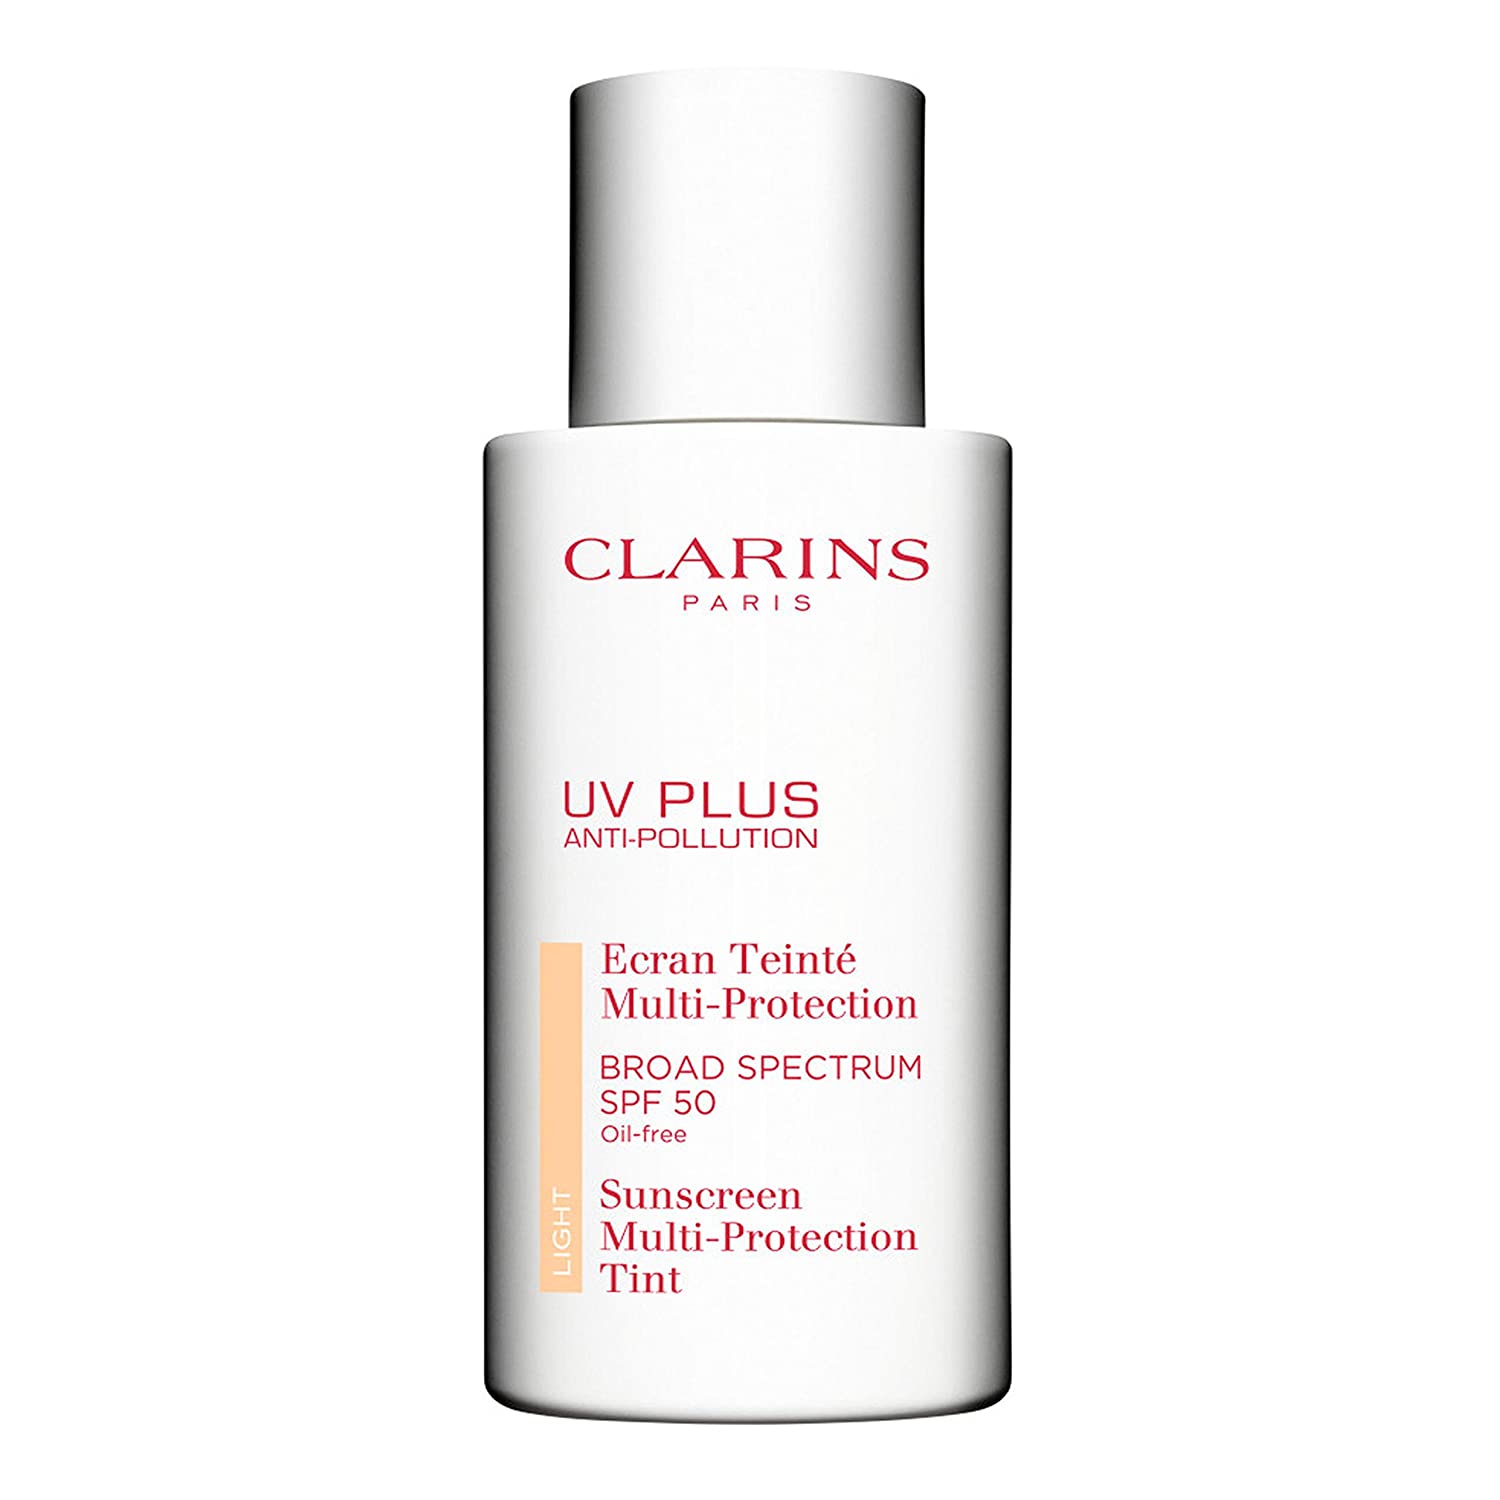 Clarins UV Plus